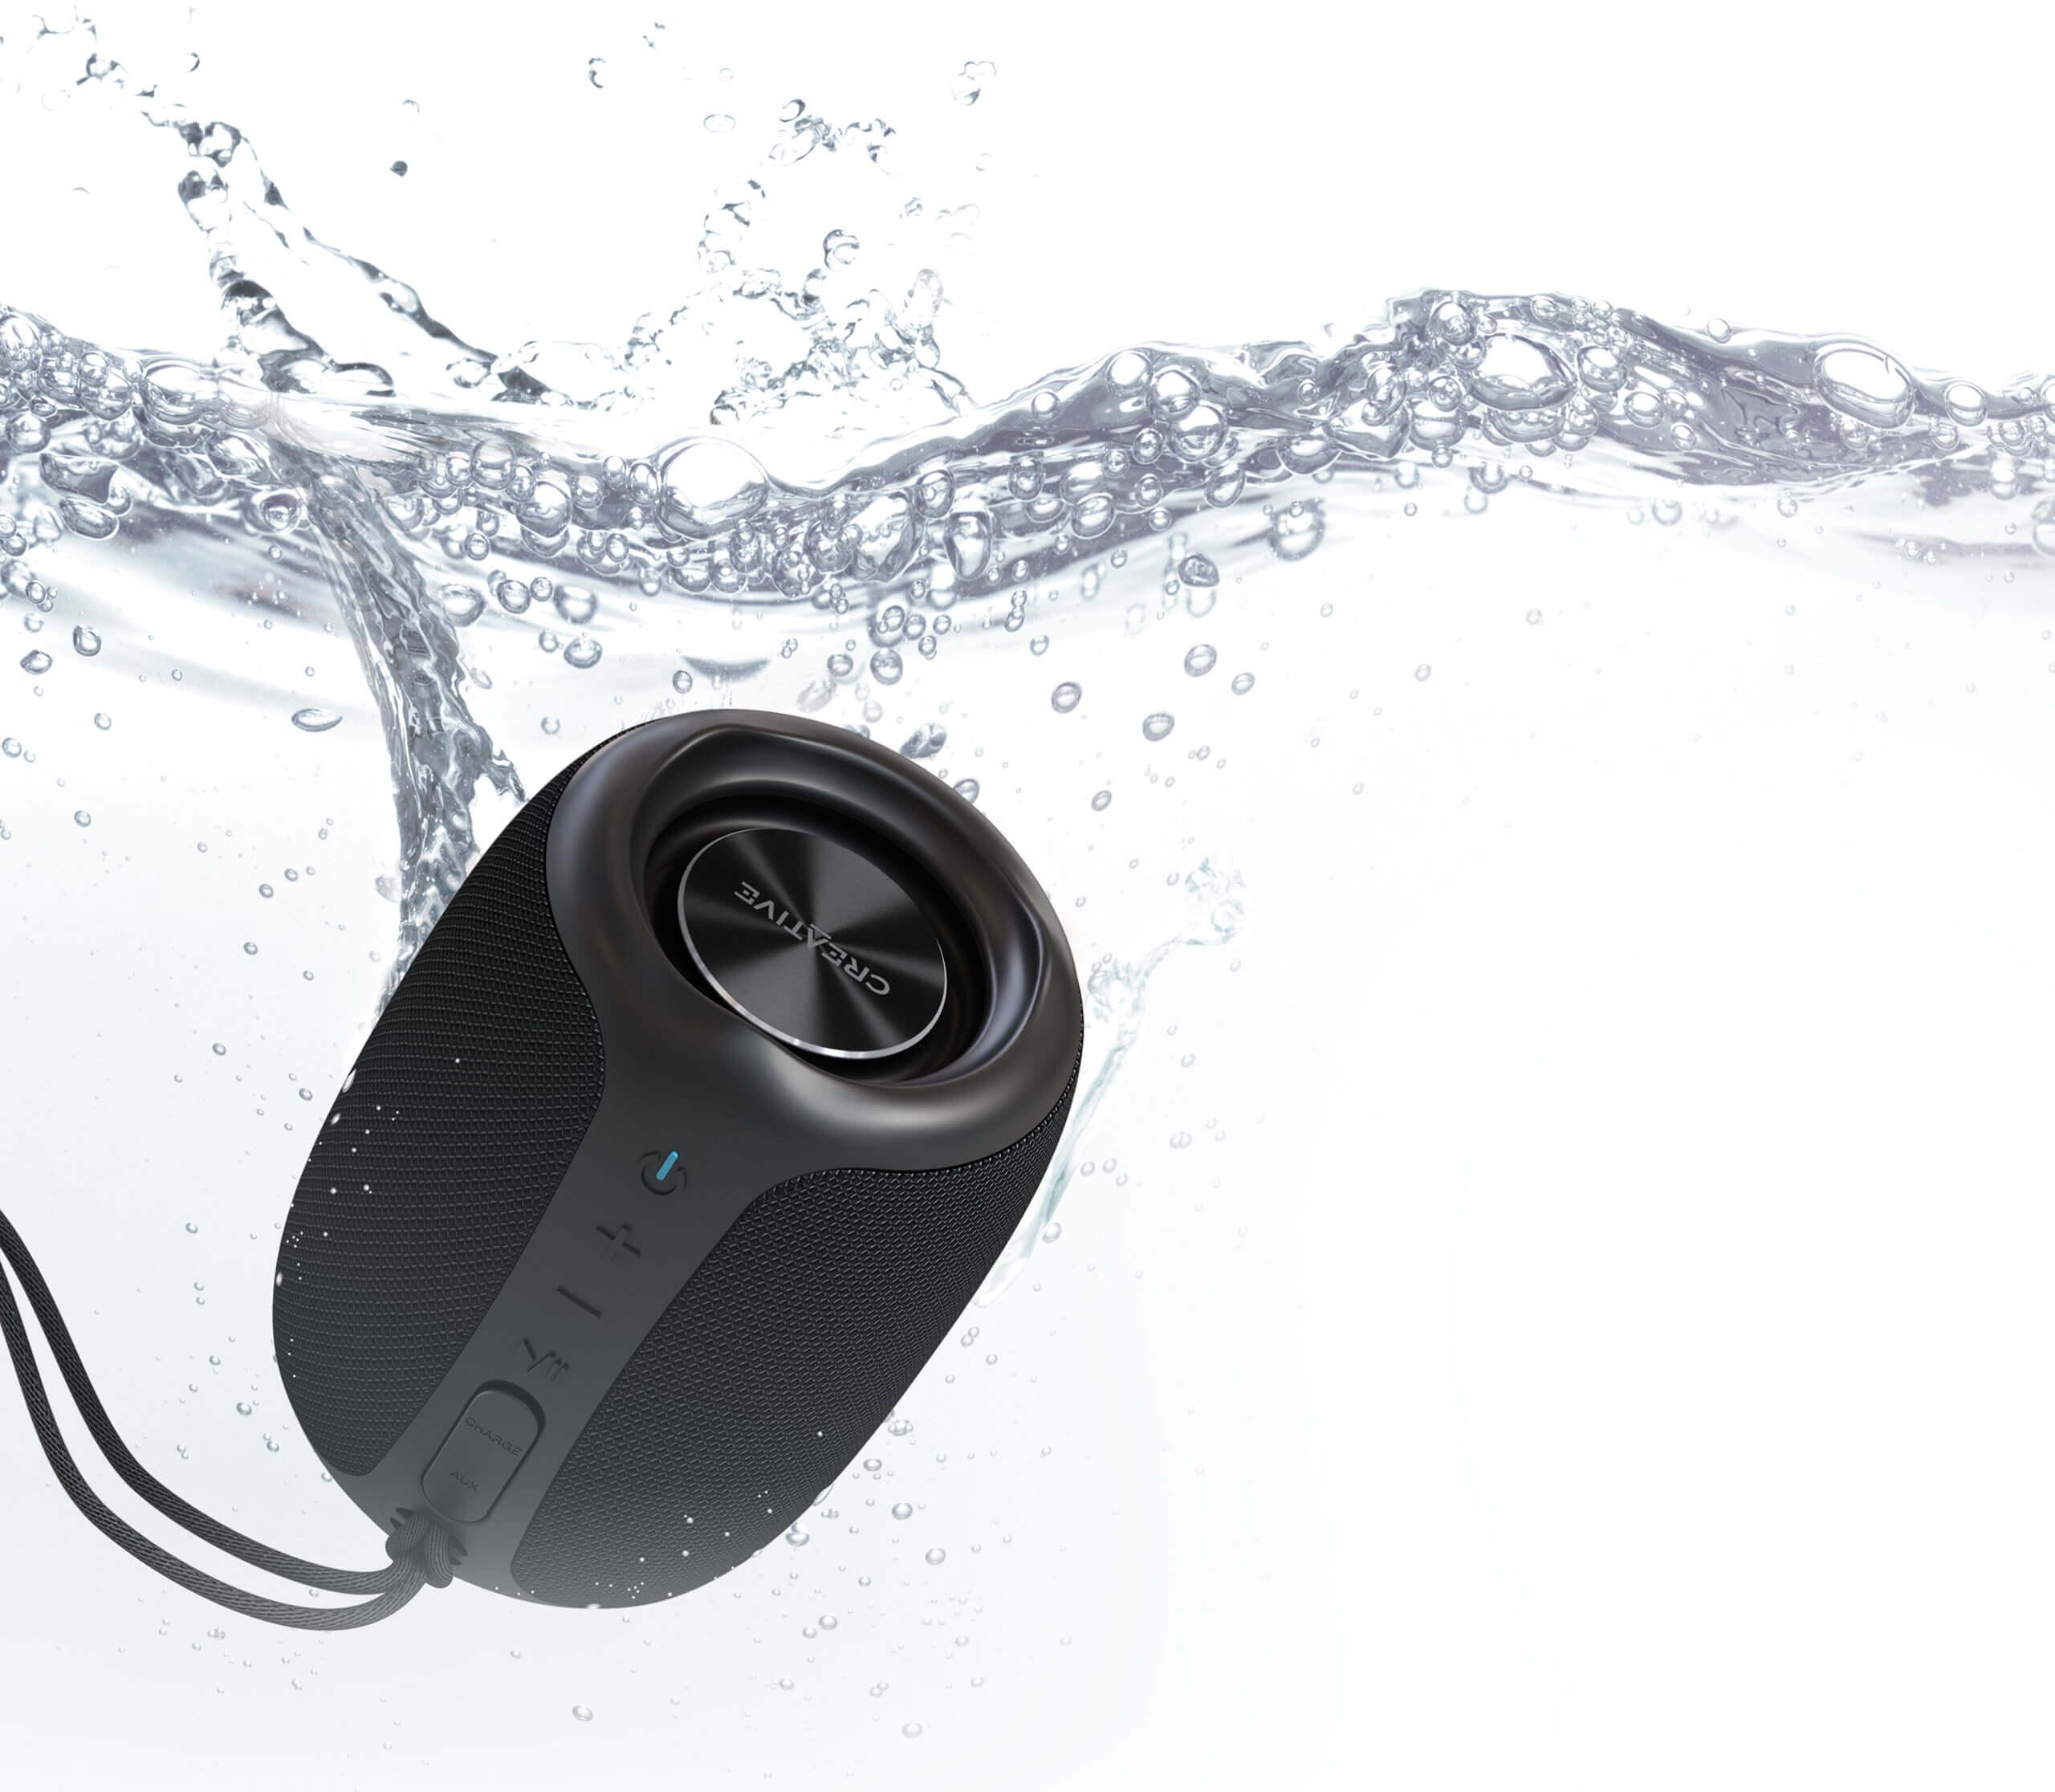 Przenośny głośnik bezprzewodowy Creative MUVO Play - certyfikat wodoszczelności IPX7: zabierz go nawet na basen!